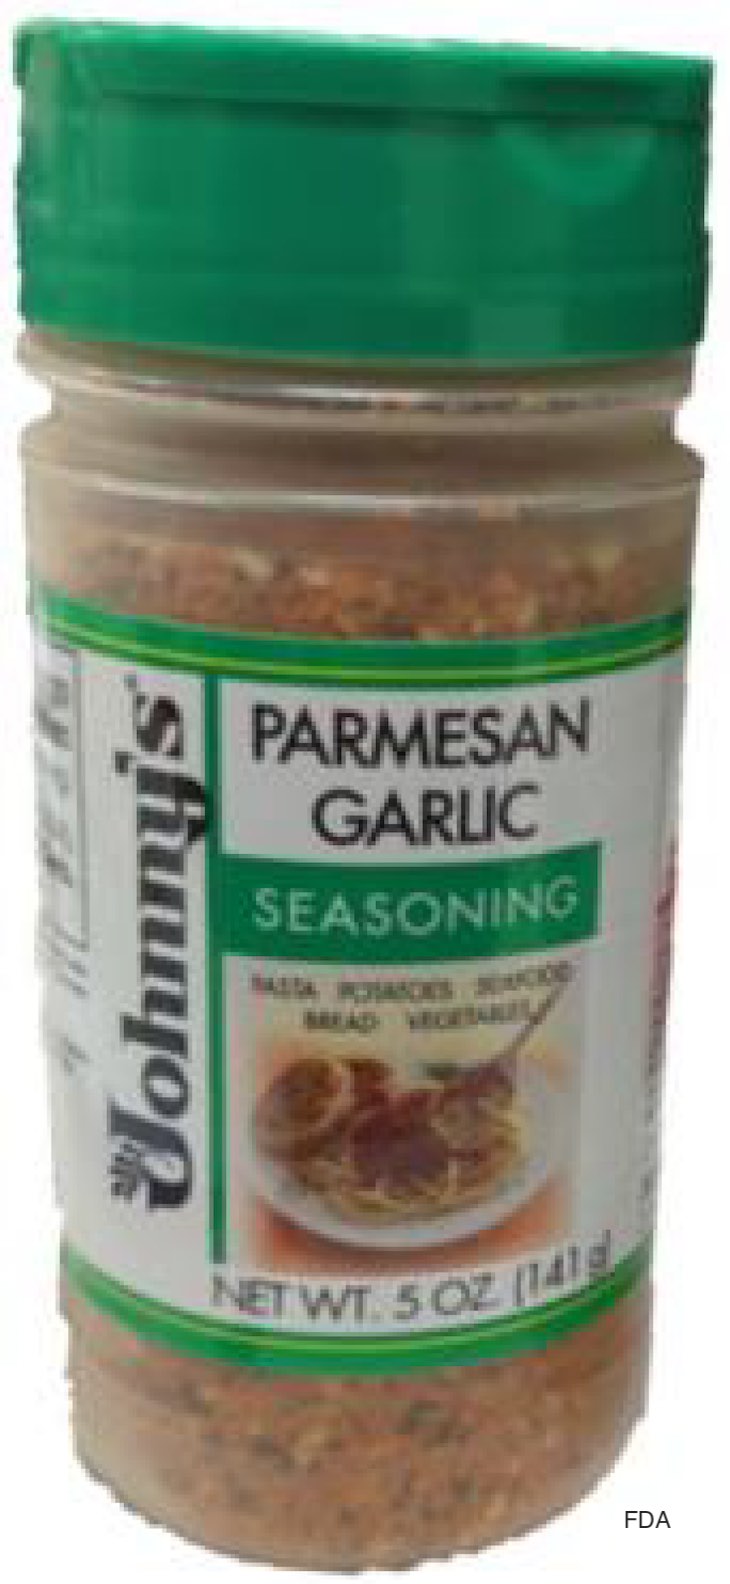 Johnny's Parmesan Garlic Seasoning Recalled For Sesame